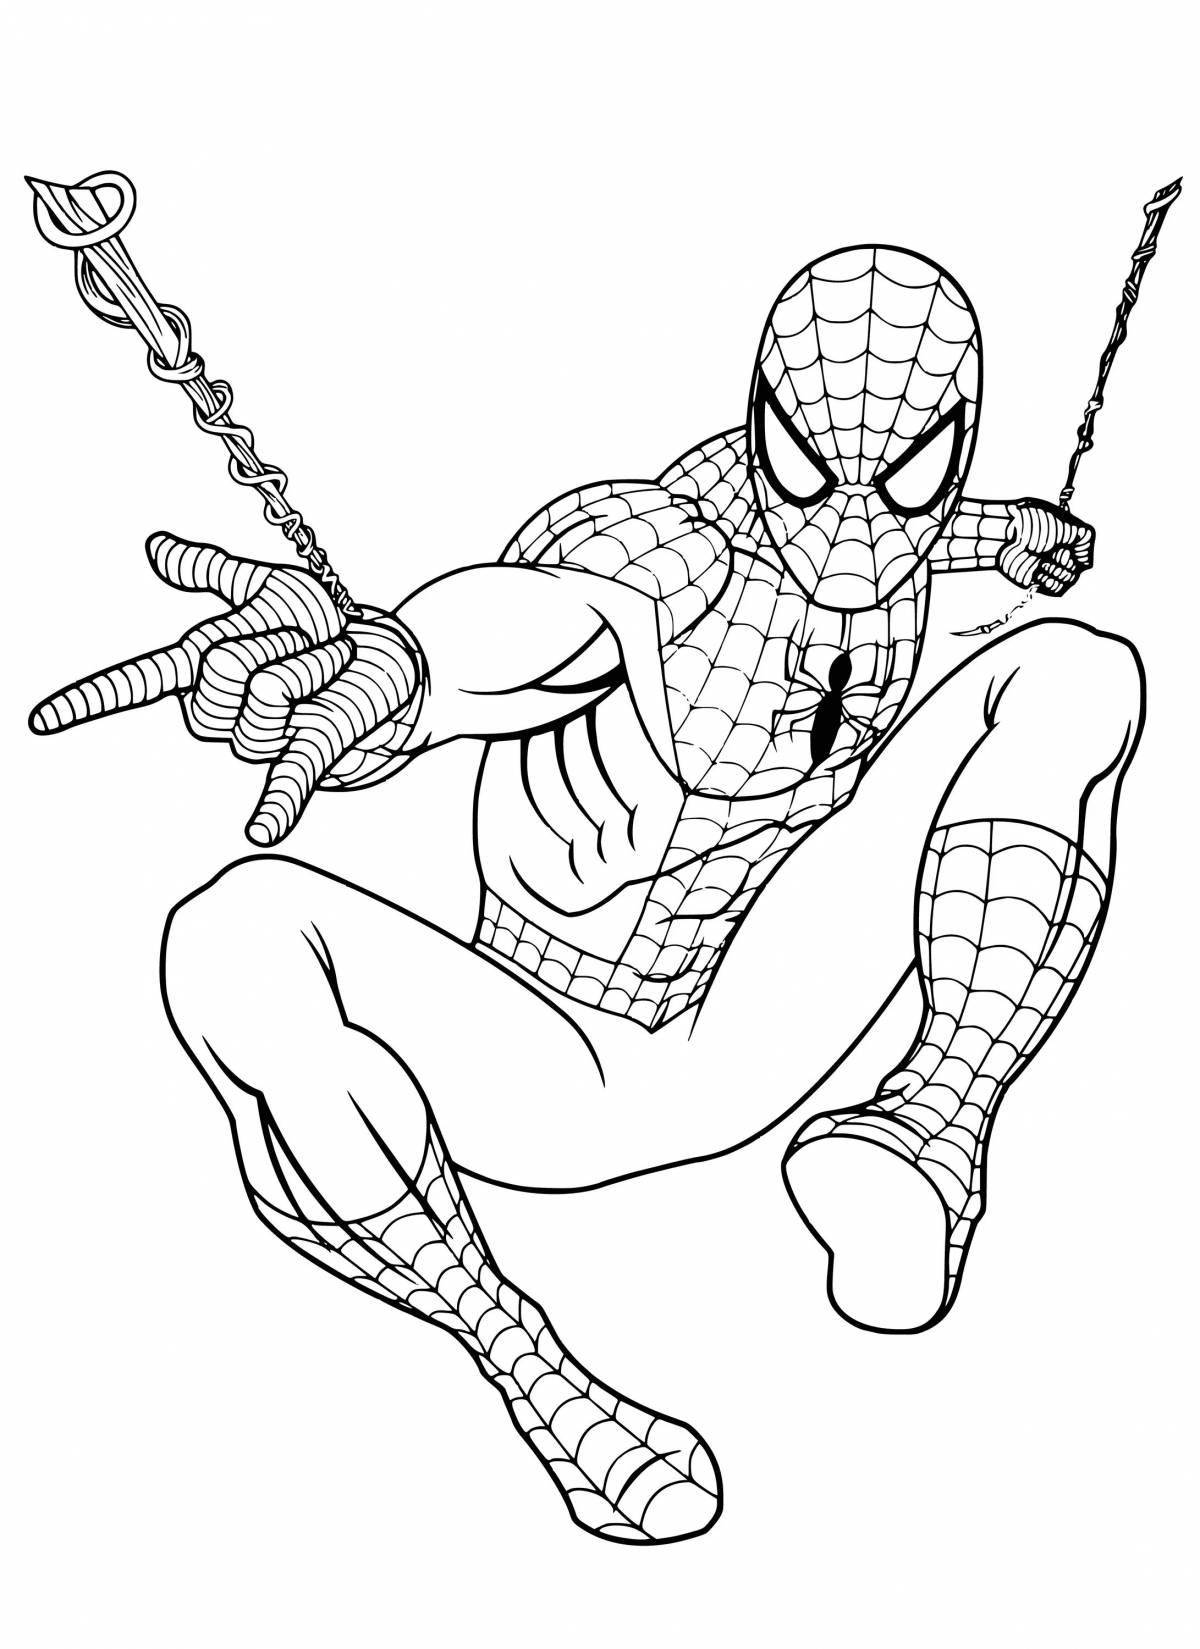 Adorable cartoon coloring of Spiderman